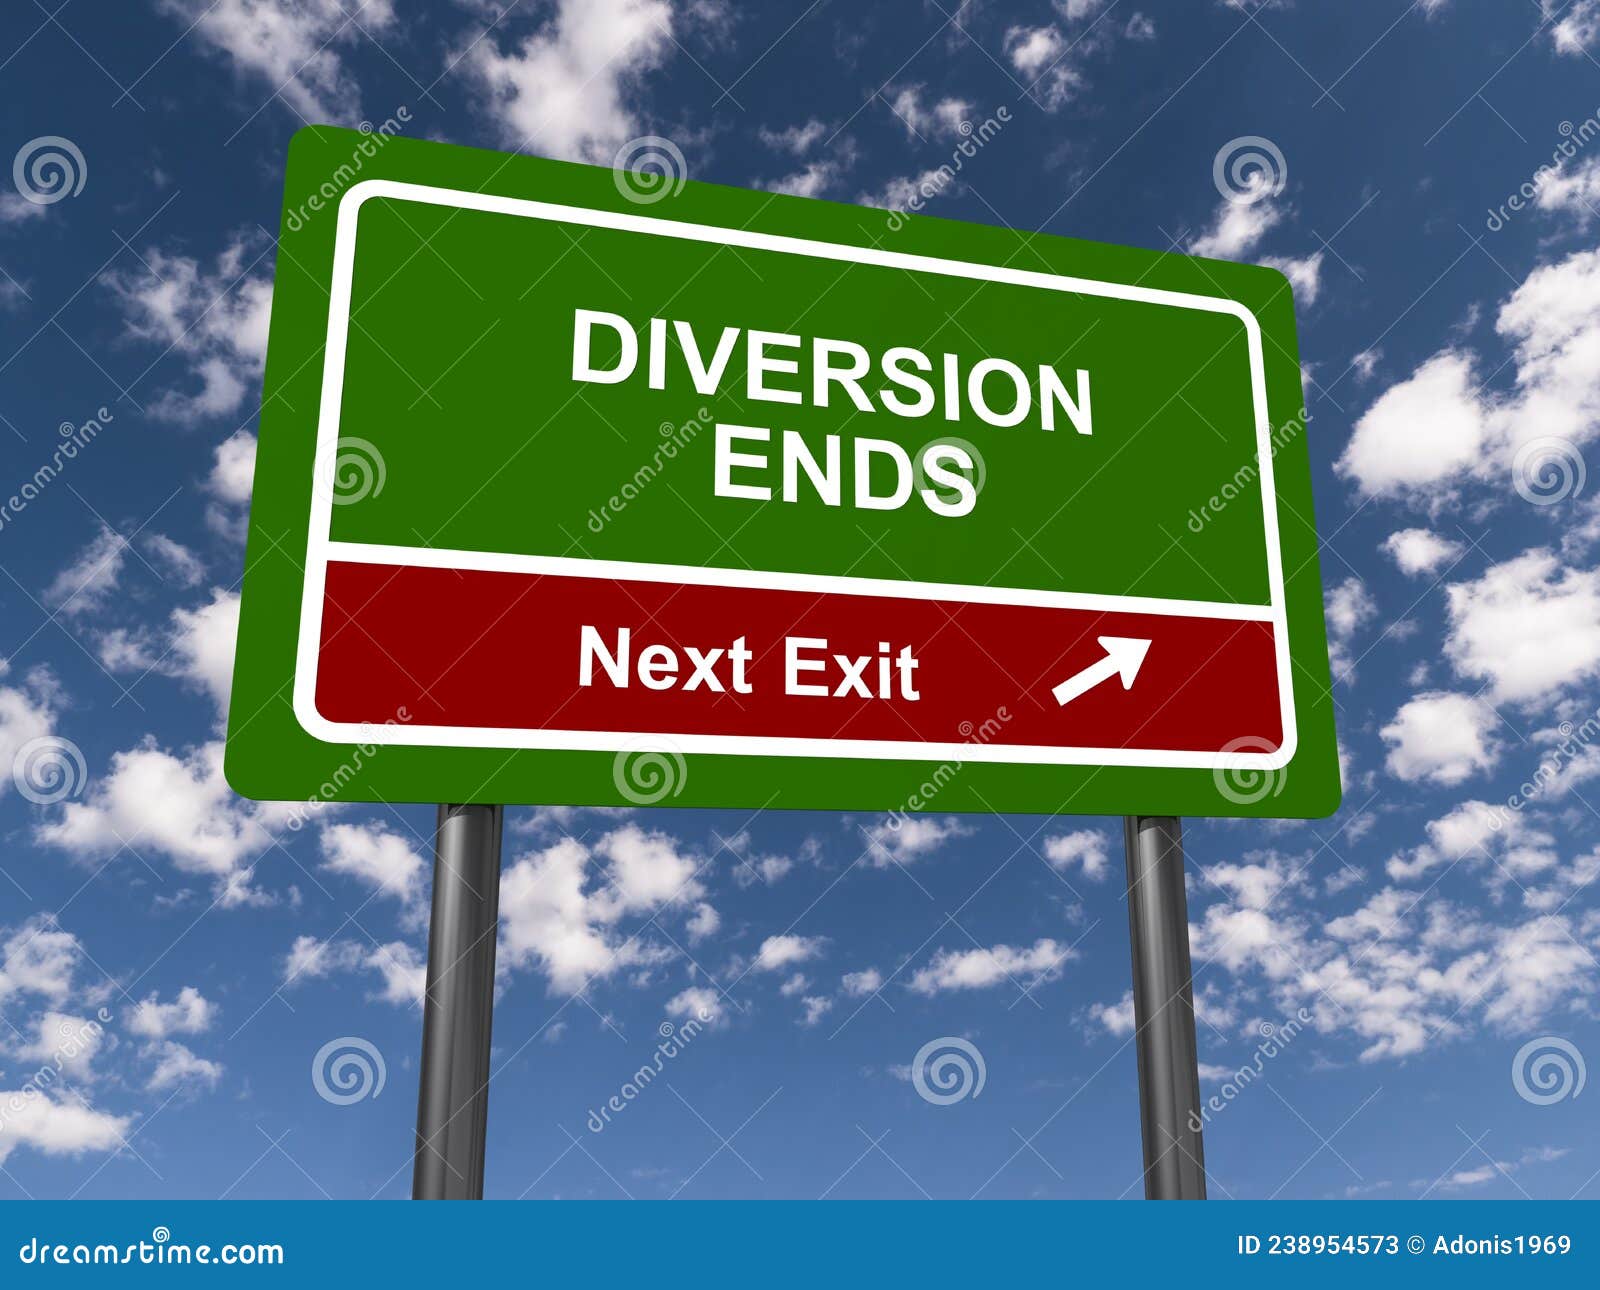 diversion ends traffic sign